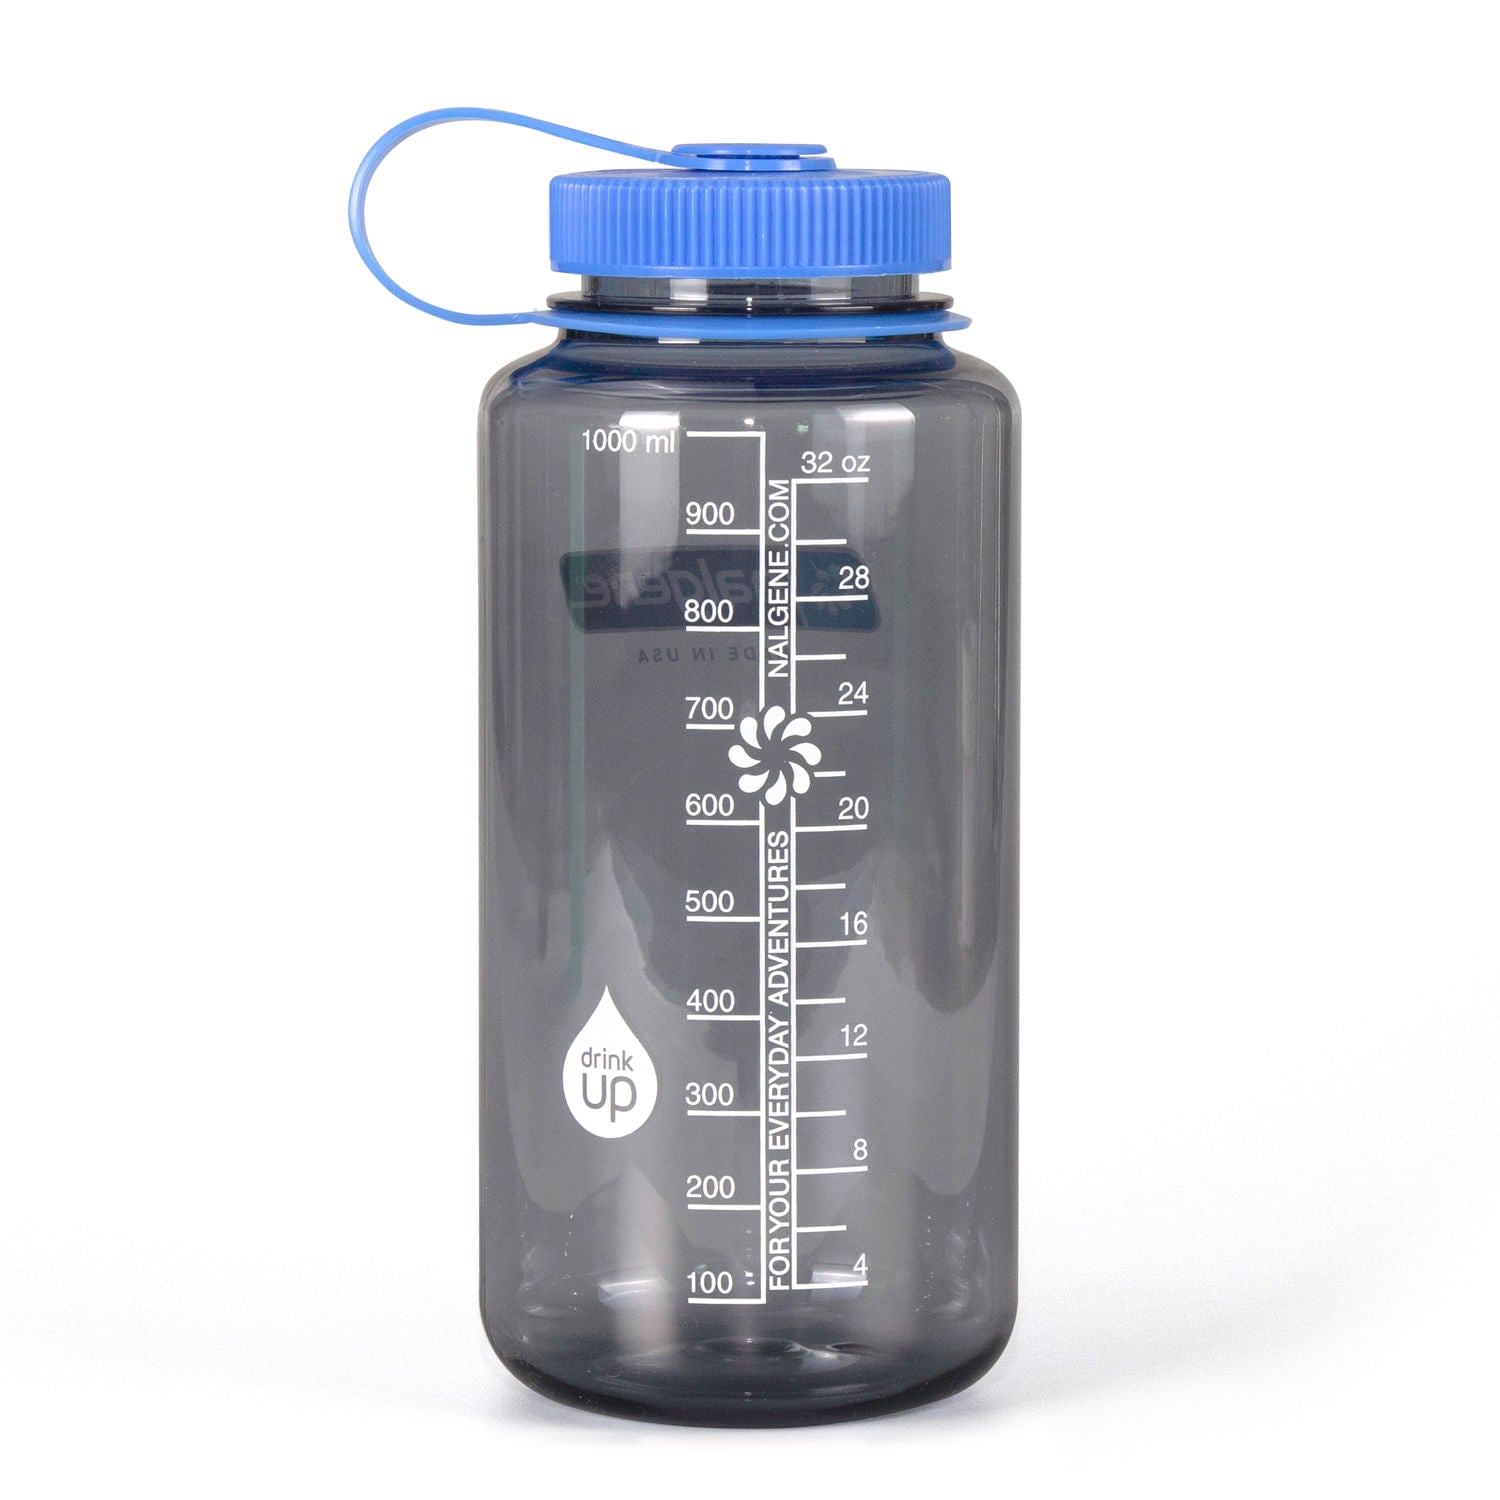 Water Bottle Carrier | Wide Mouth Bottles | Ballistic Nylon | 32 oz Sierra 